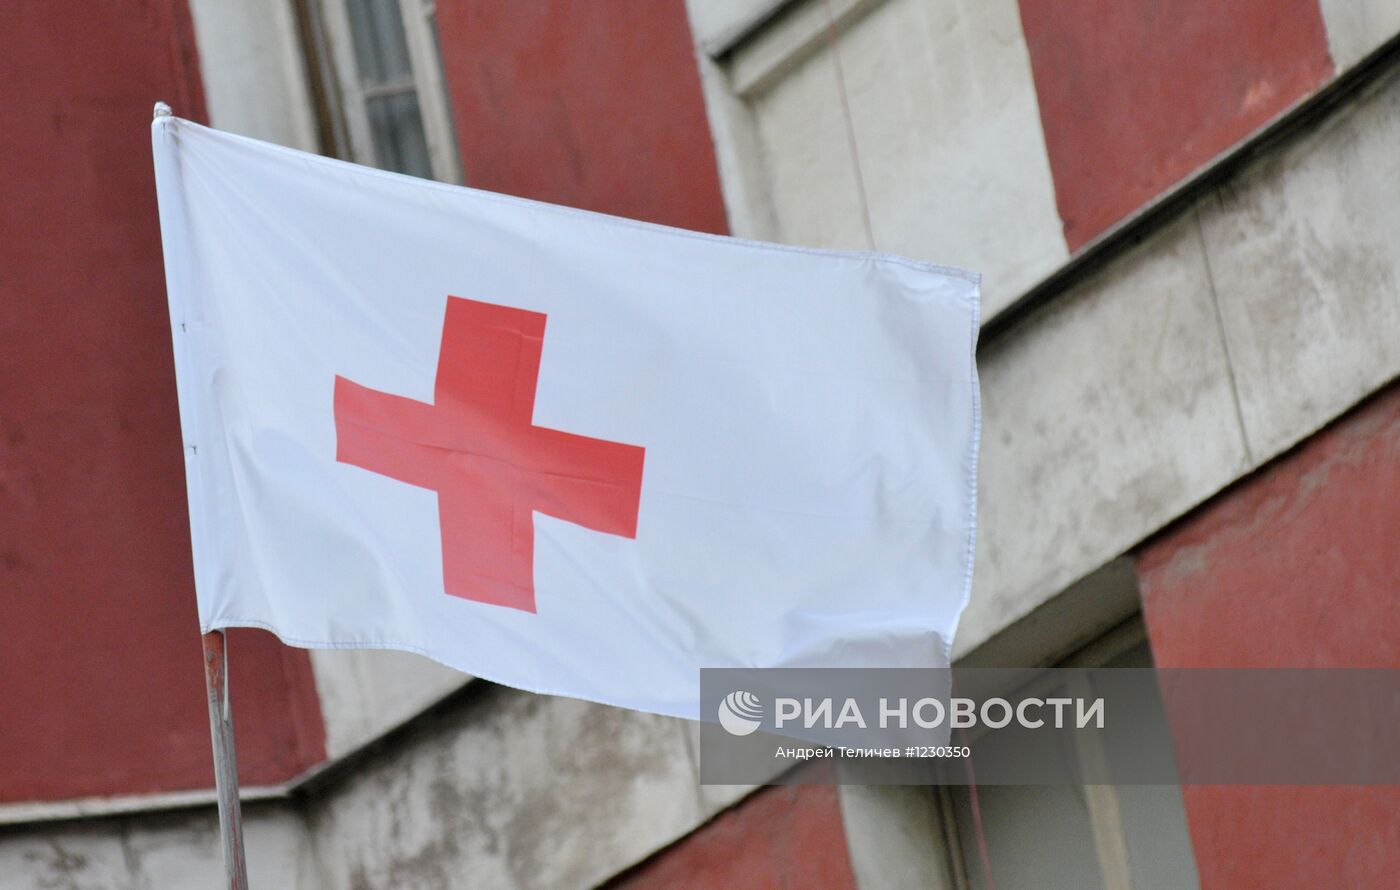 Офис российского Красного креста в Москве